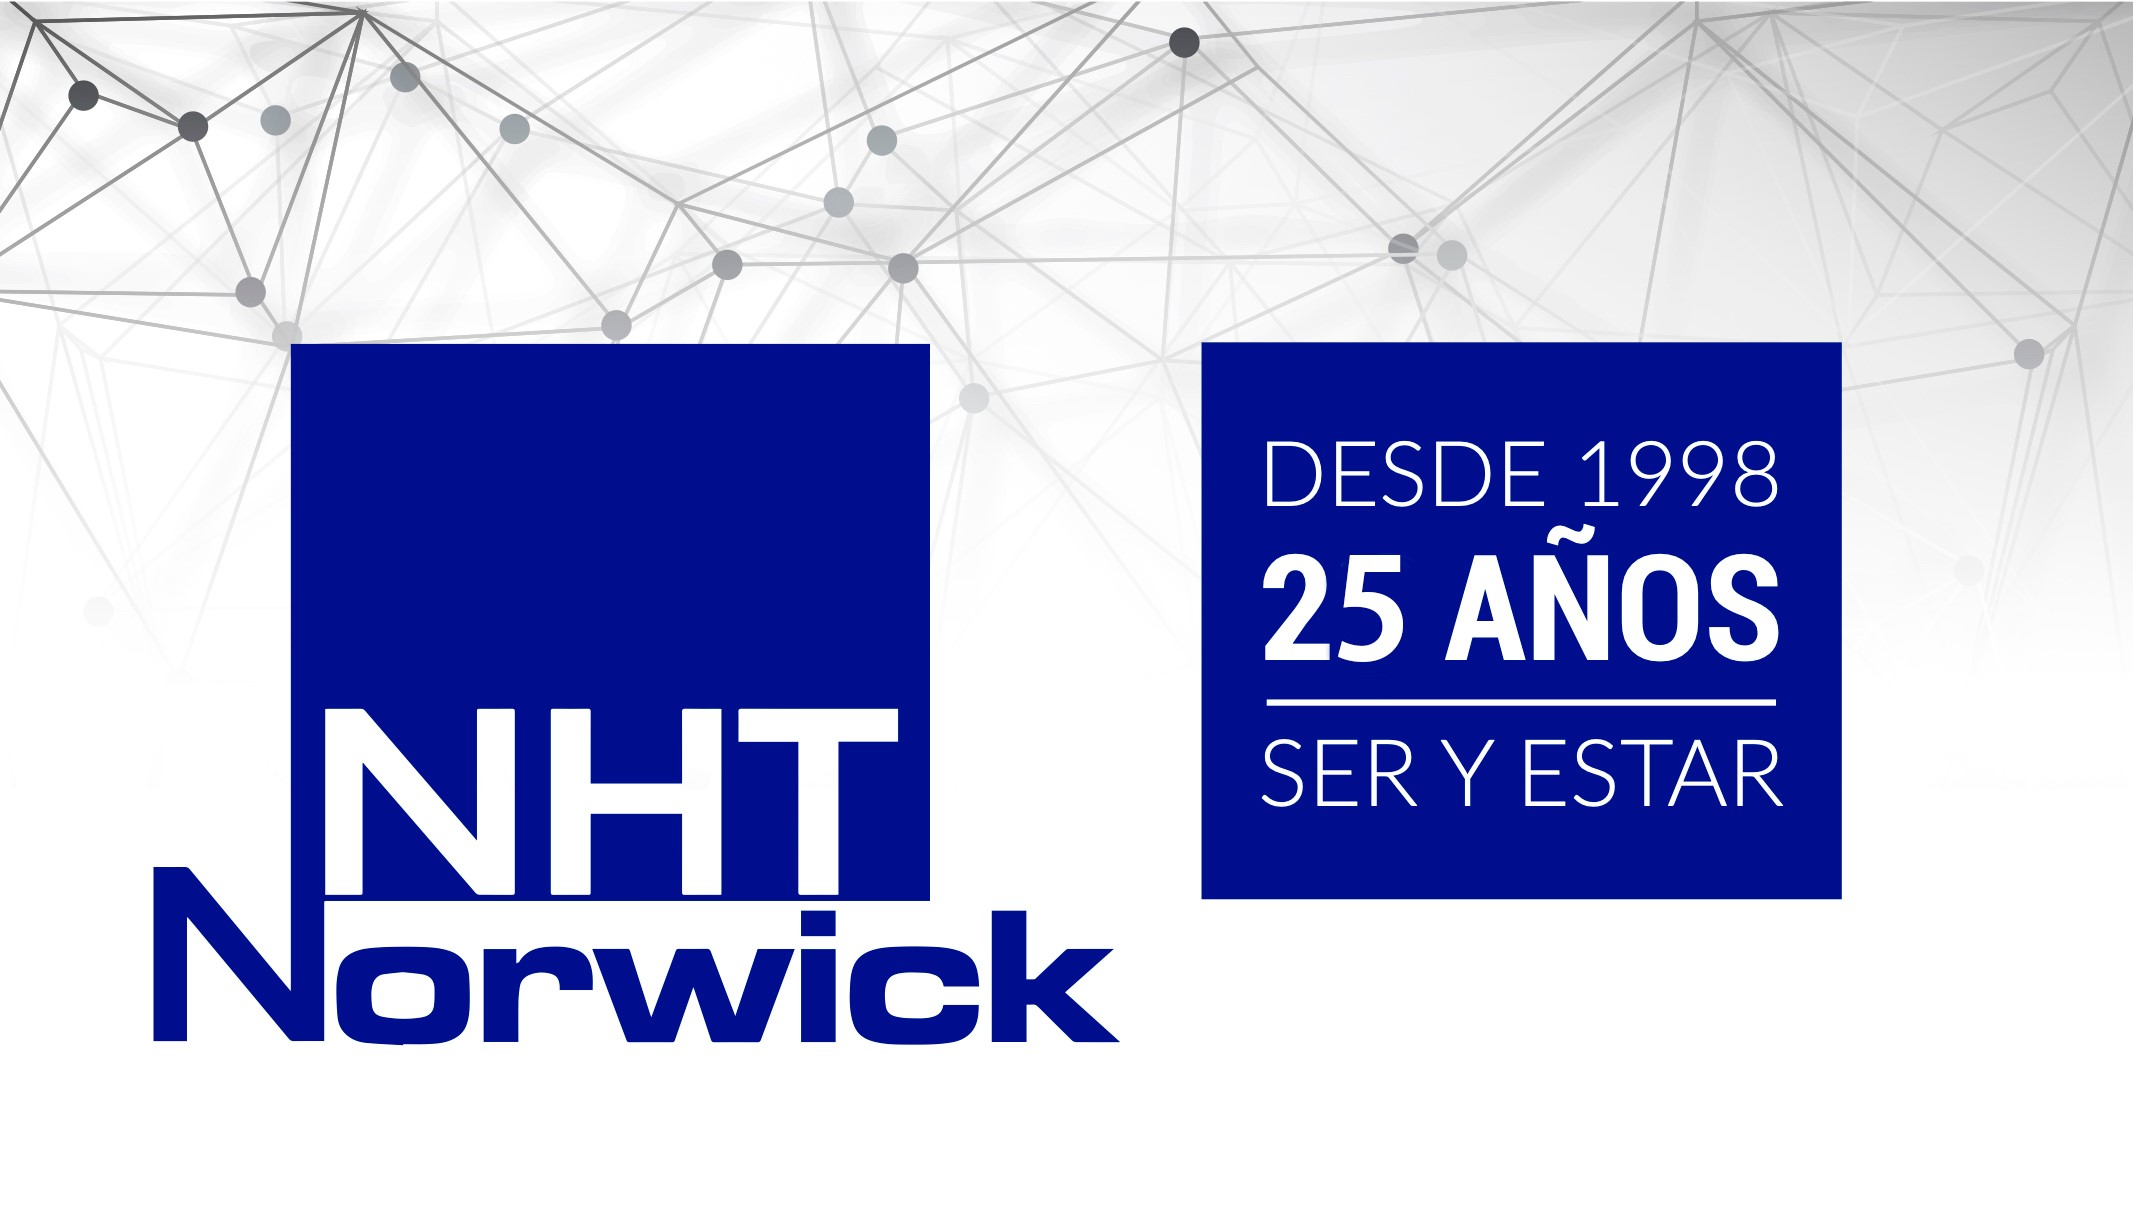 25 años NHT-Norwick. Ser y estar